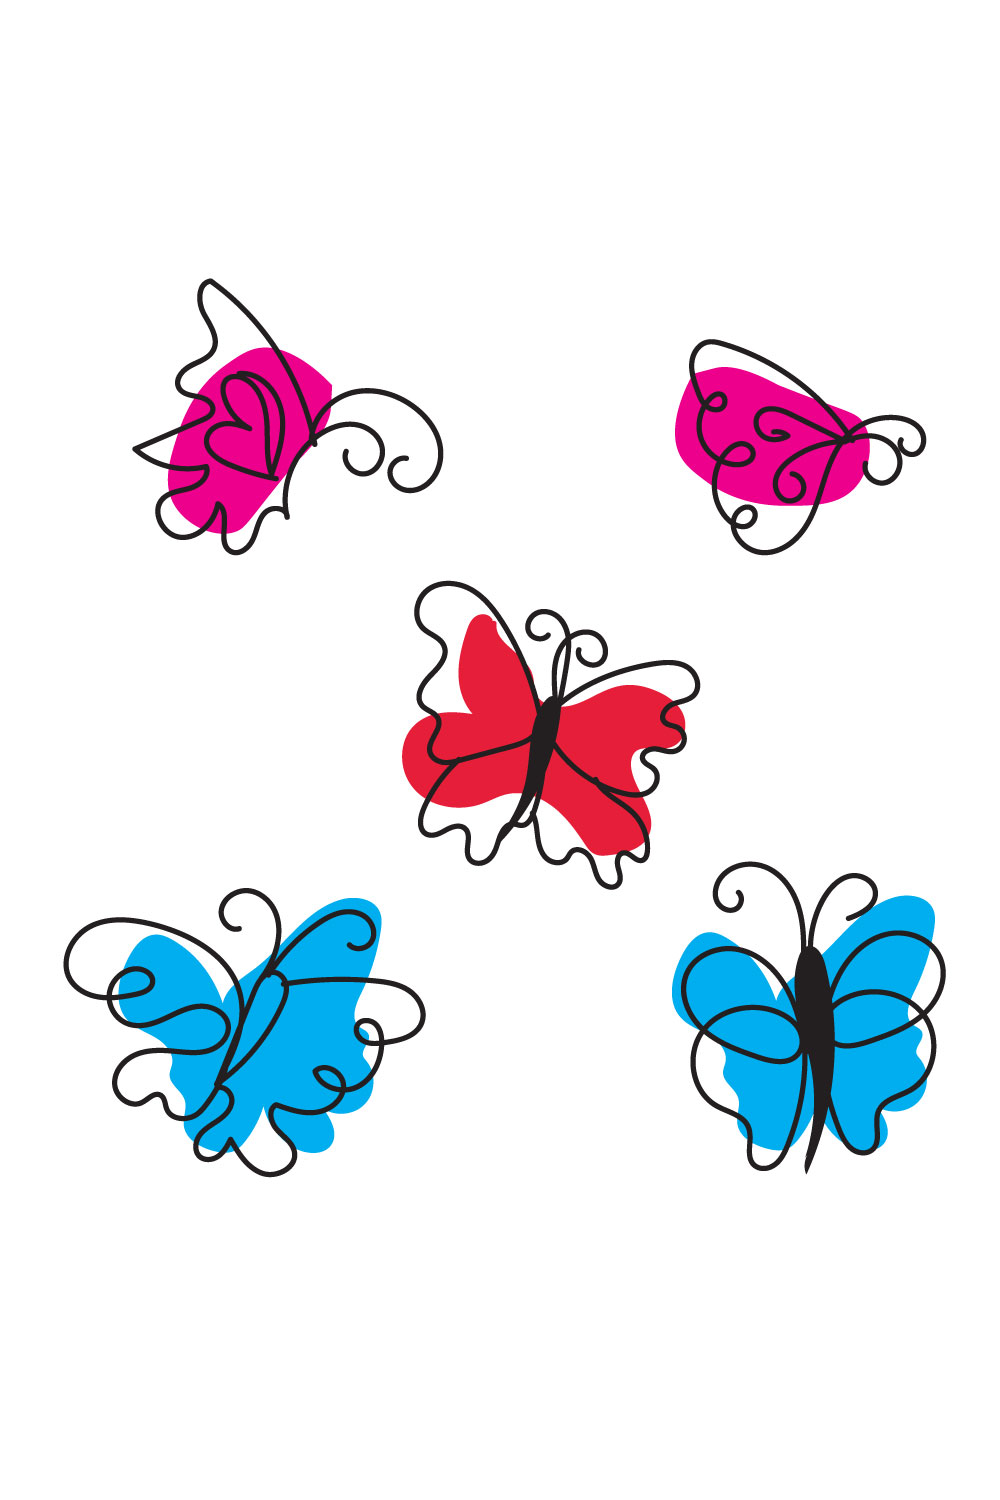 Butterfly Liner Art pinterest image.